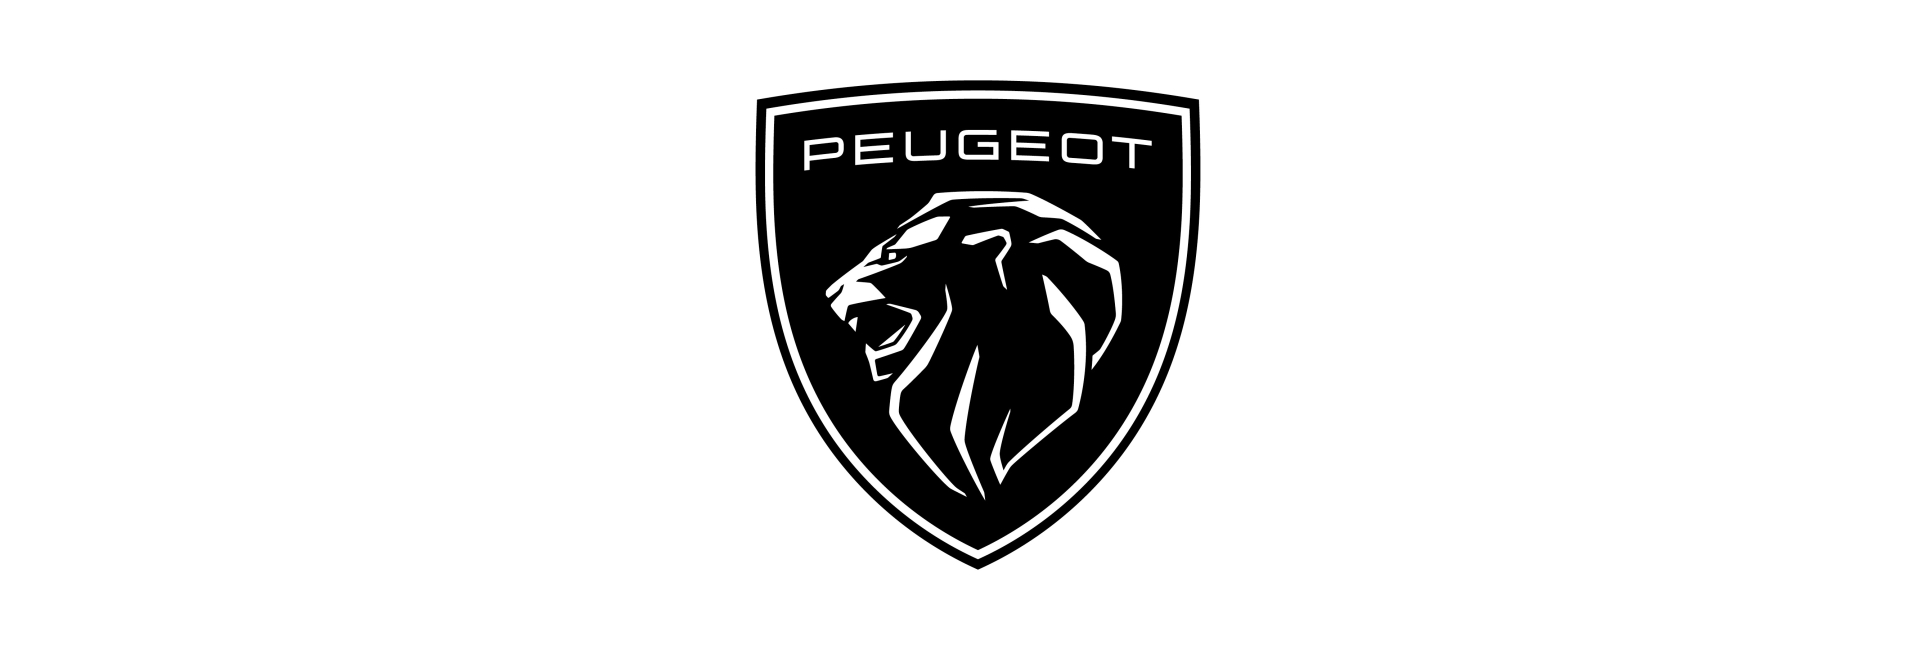 30 éve Magyarországon a Peugeot